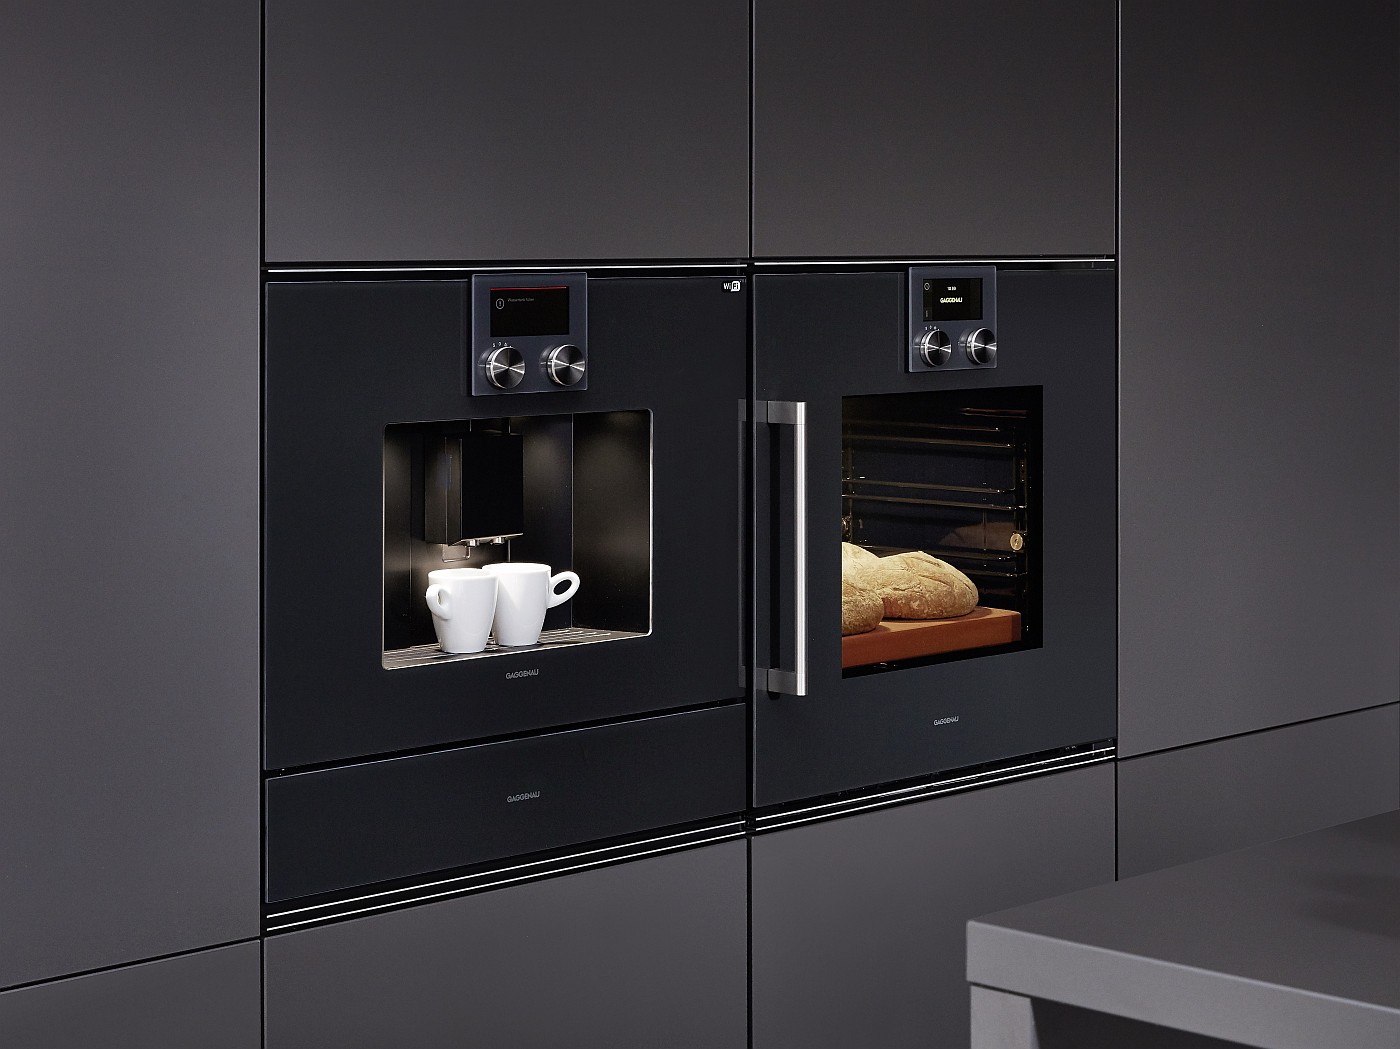 Einbau-Kaffeevollautomat von Gaggenau mit Wärmeschublade darunter und daneben Backofen Geräte Gaggenau Küche Nobilia